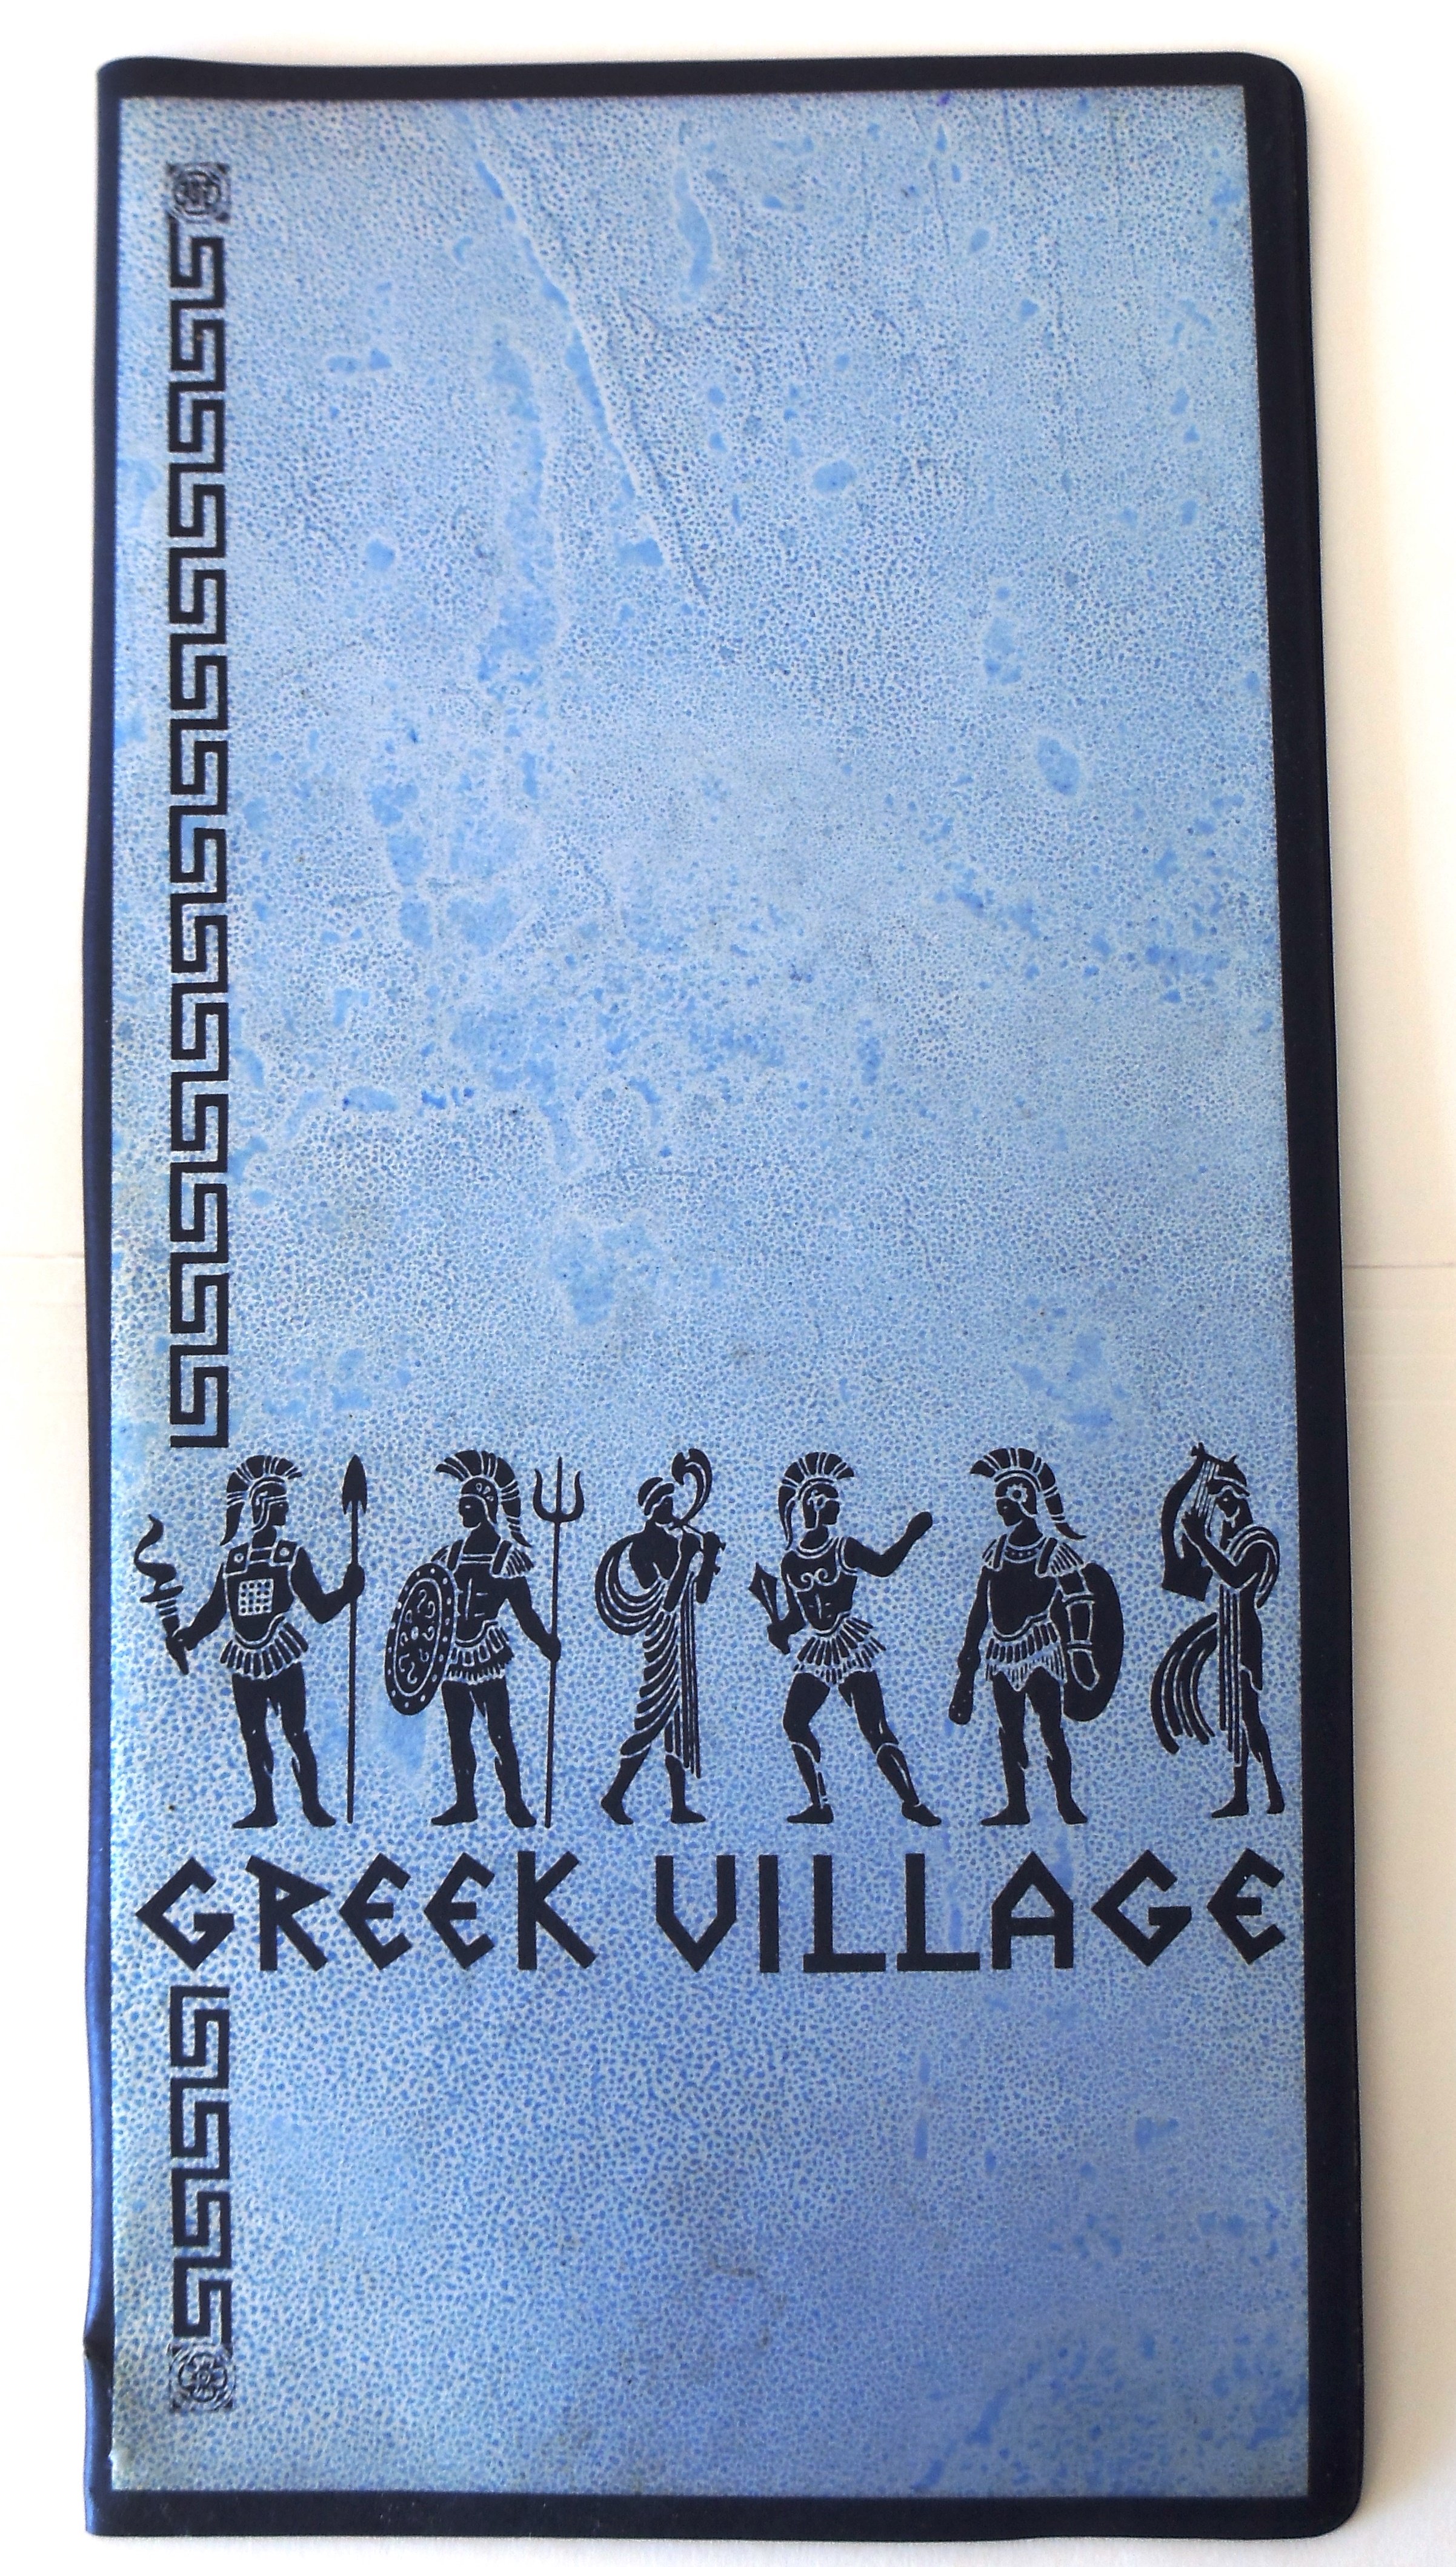 16 Greek Village menu.jpg